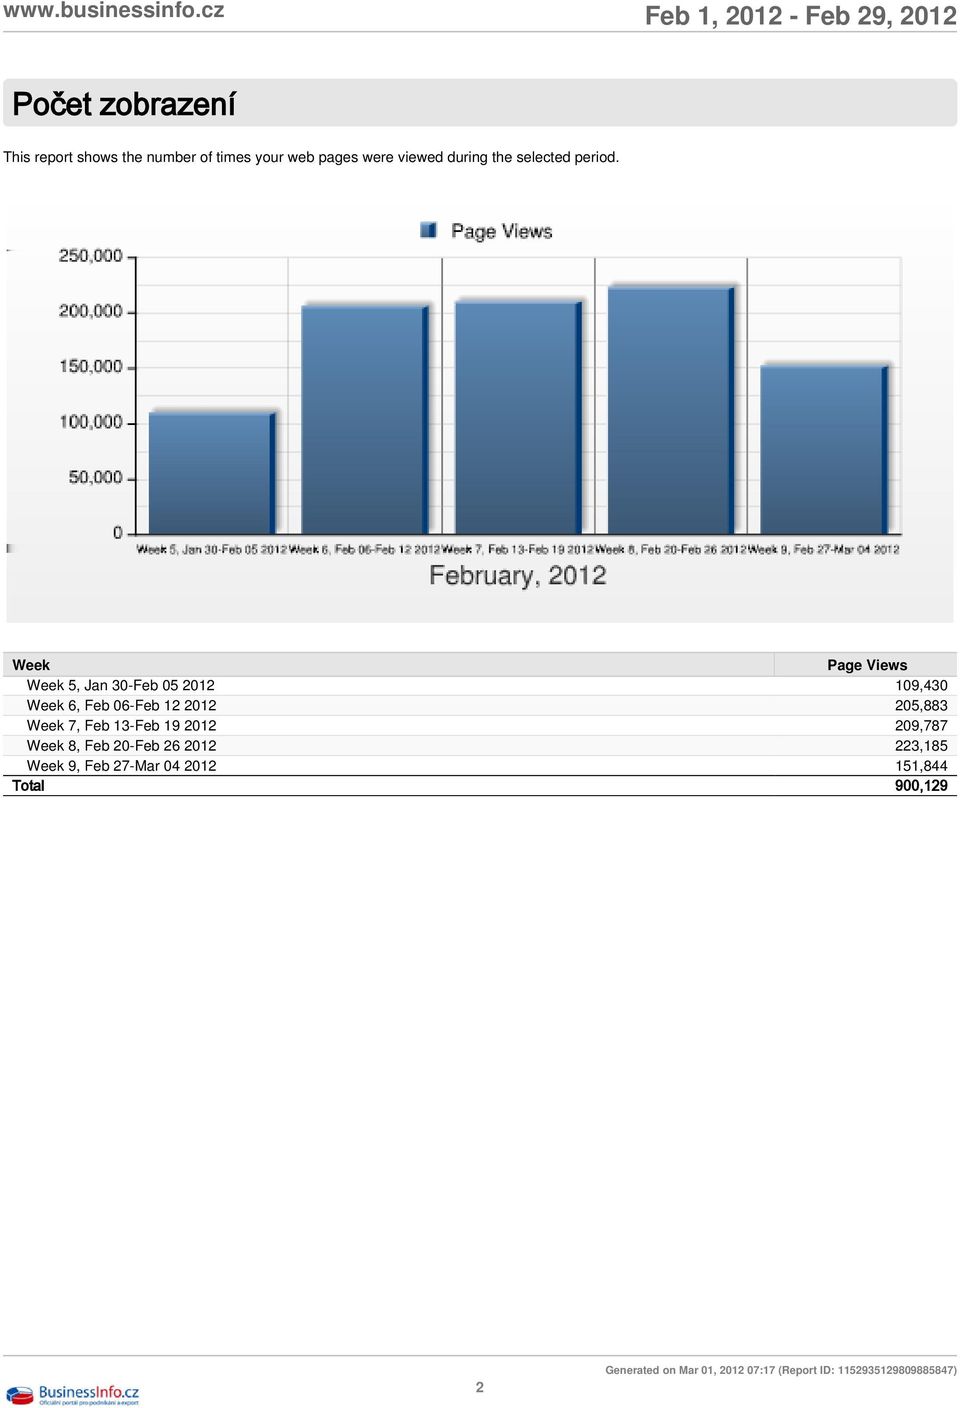 Week Page Views Week 5, Jan 30-Feb 05 2012 109,430 Week 6, Feb 06-Feb 12 2012 205,883 Week 7,